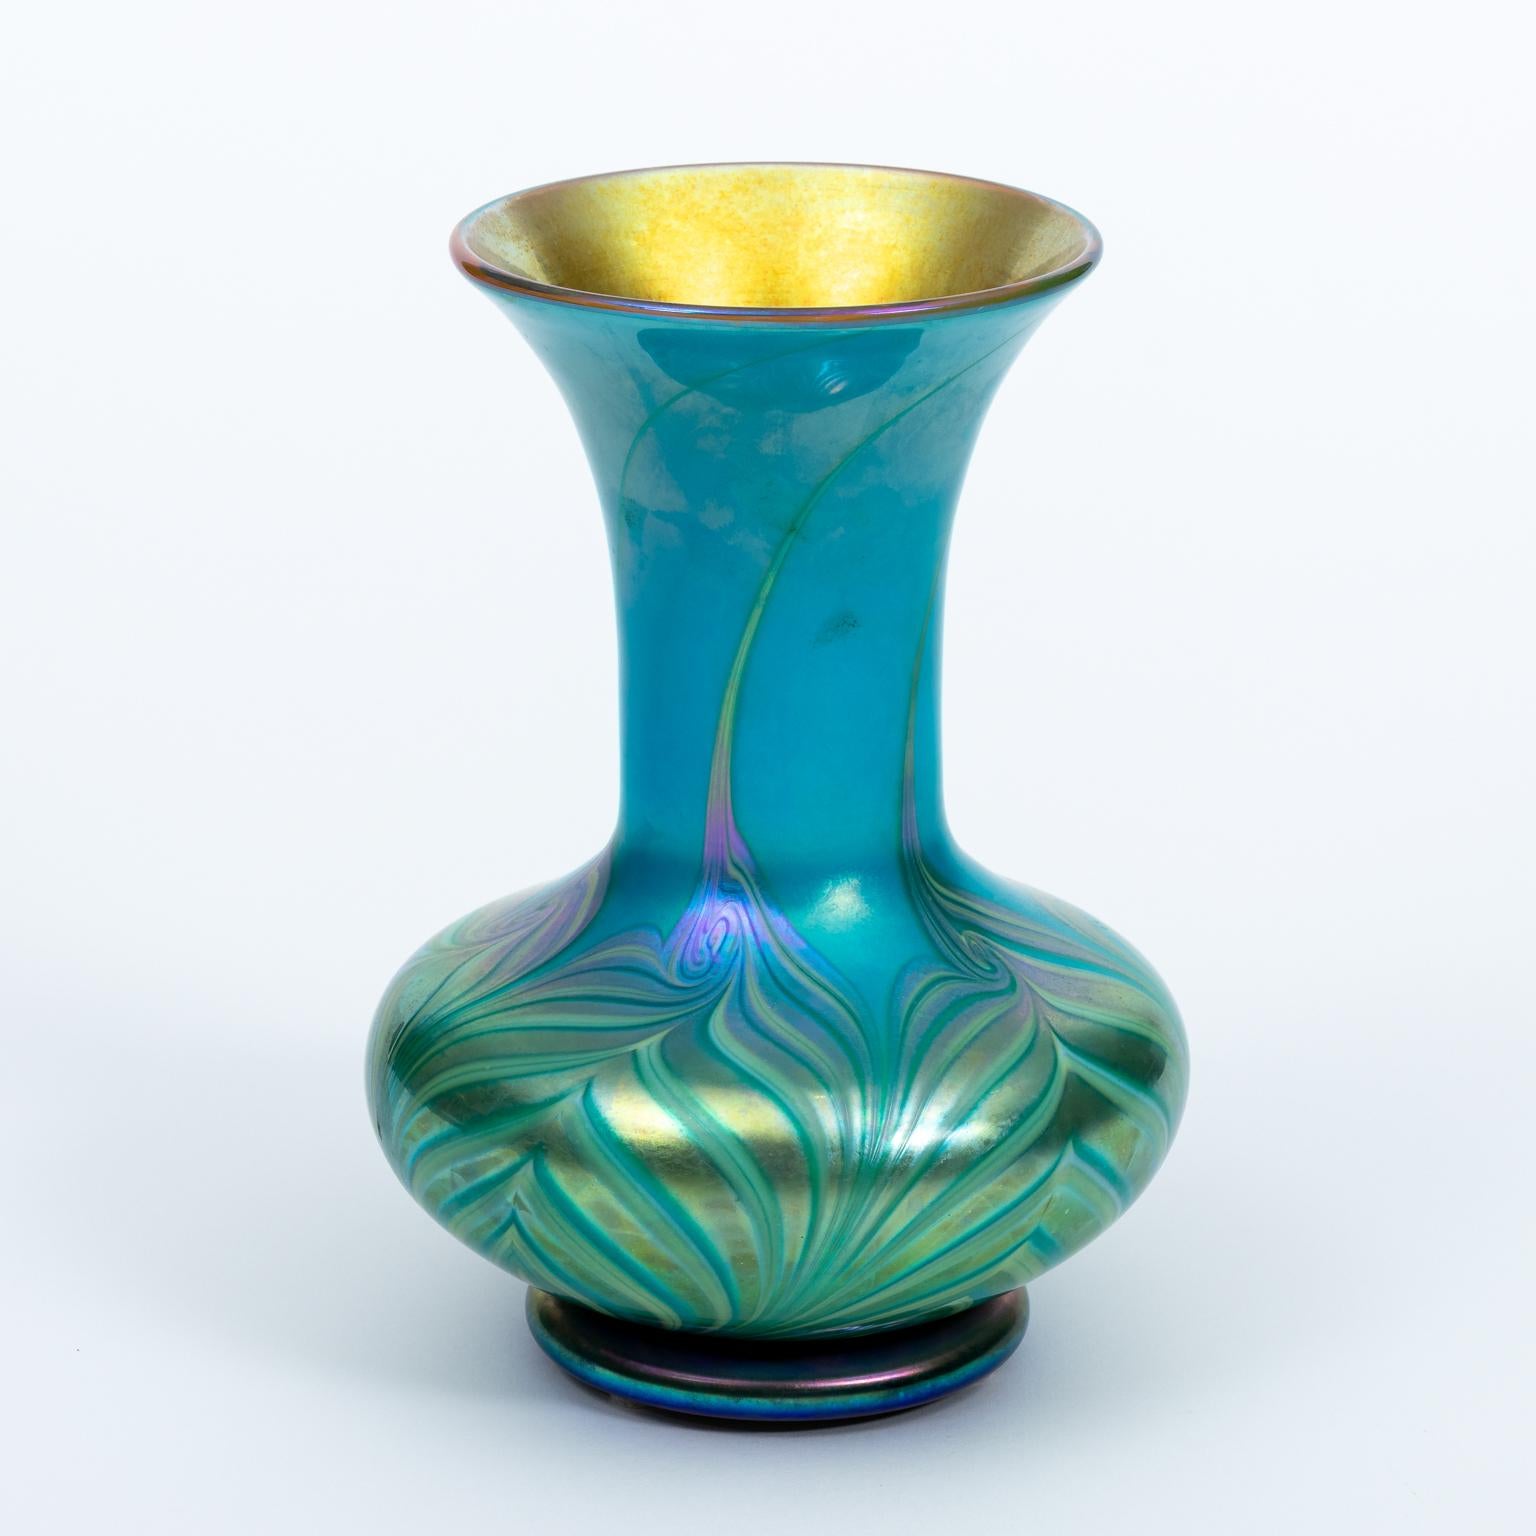 American King Tut Design Vase by Lunderg Studios